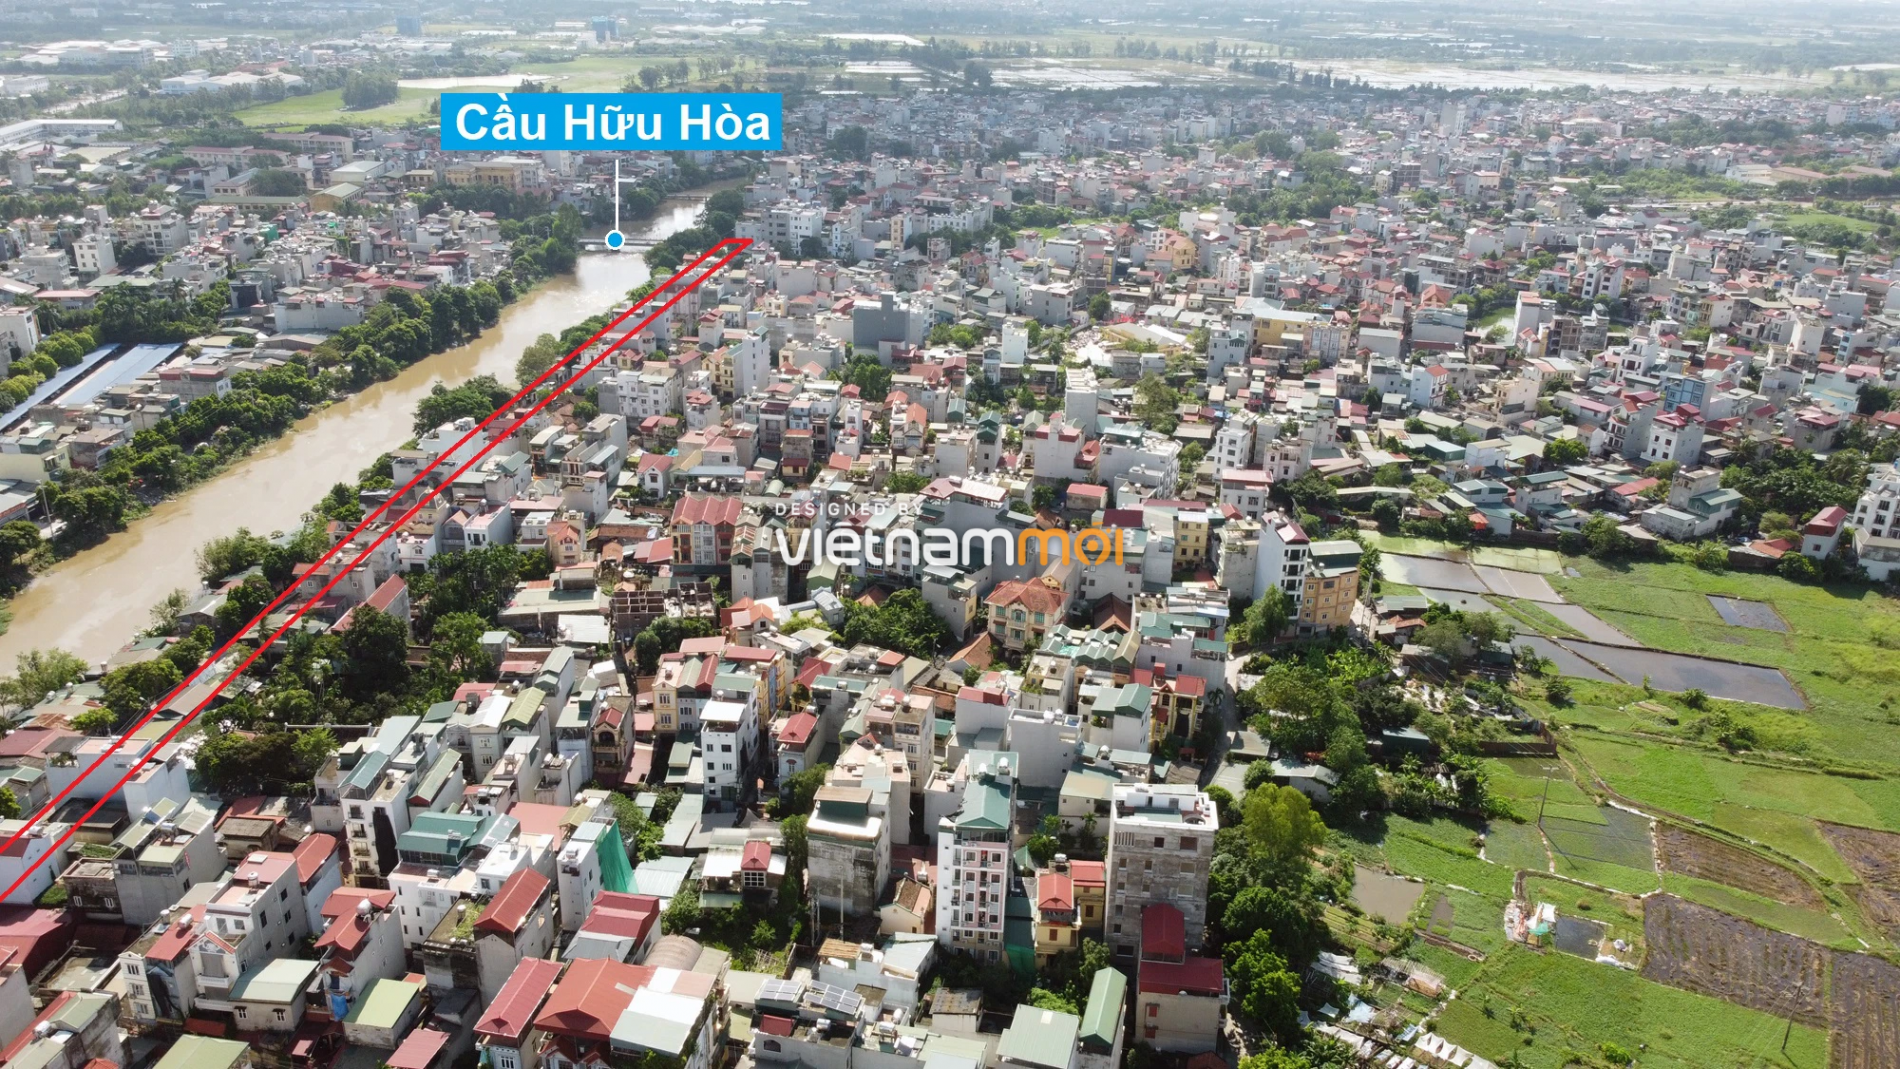 Những khu đất sắp thu hồi để mở đường ở xã Hữu Hòa, Thanh Trì, Hà Nội (phần 5) - Ảnh 6.